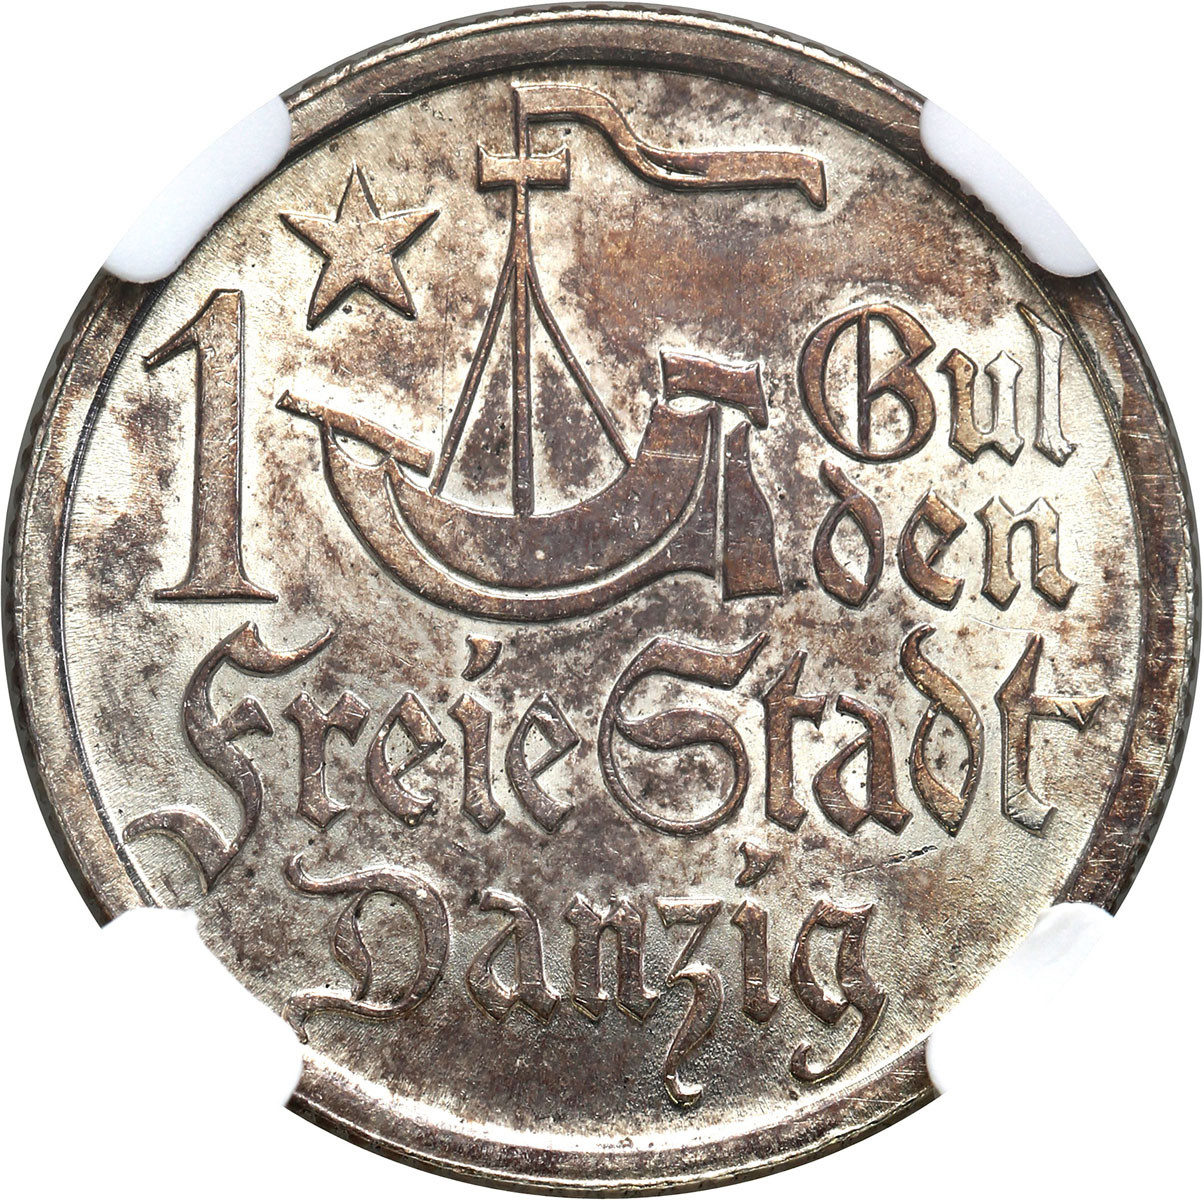 Wolne Miasto Gdańsk/Danzig. 1 Gulden 1923 NGC UNC – PIĘKNY